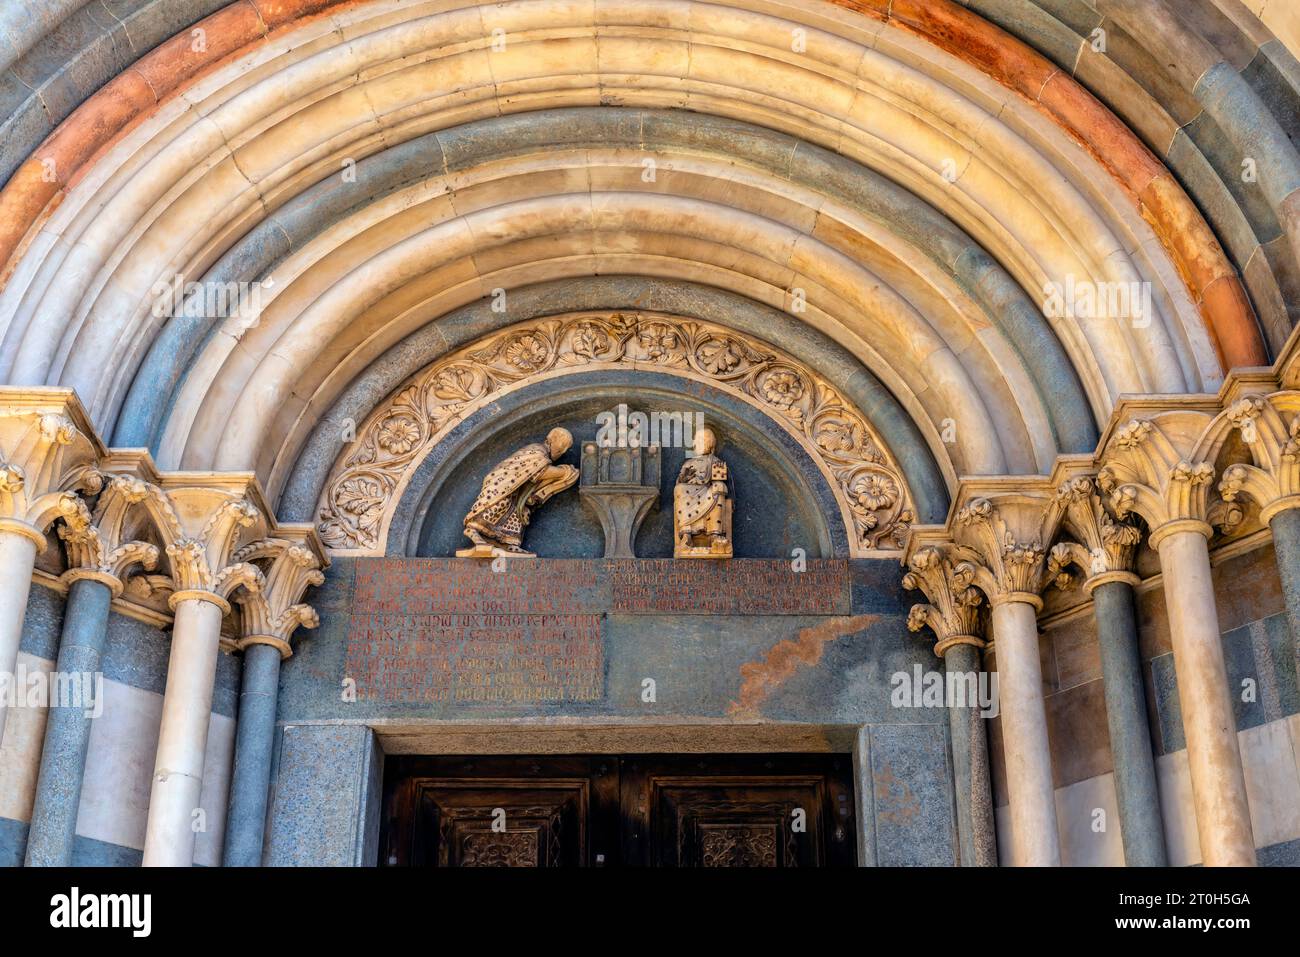 Basilica di Sant'Andrea. Il portale mostra il Cardinale bicchieri che offre la Chiesa a San Andrew, intronizzato. Vercelli, Piemonte, Italia settentrionale. Foto Stock